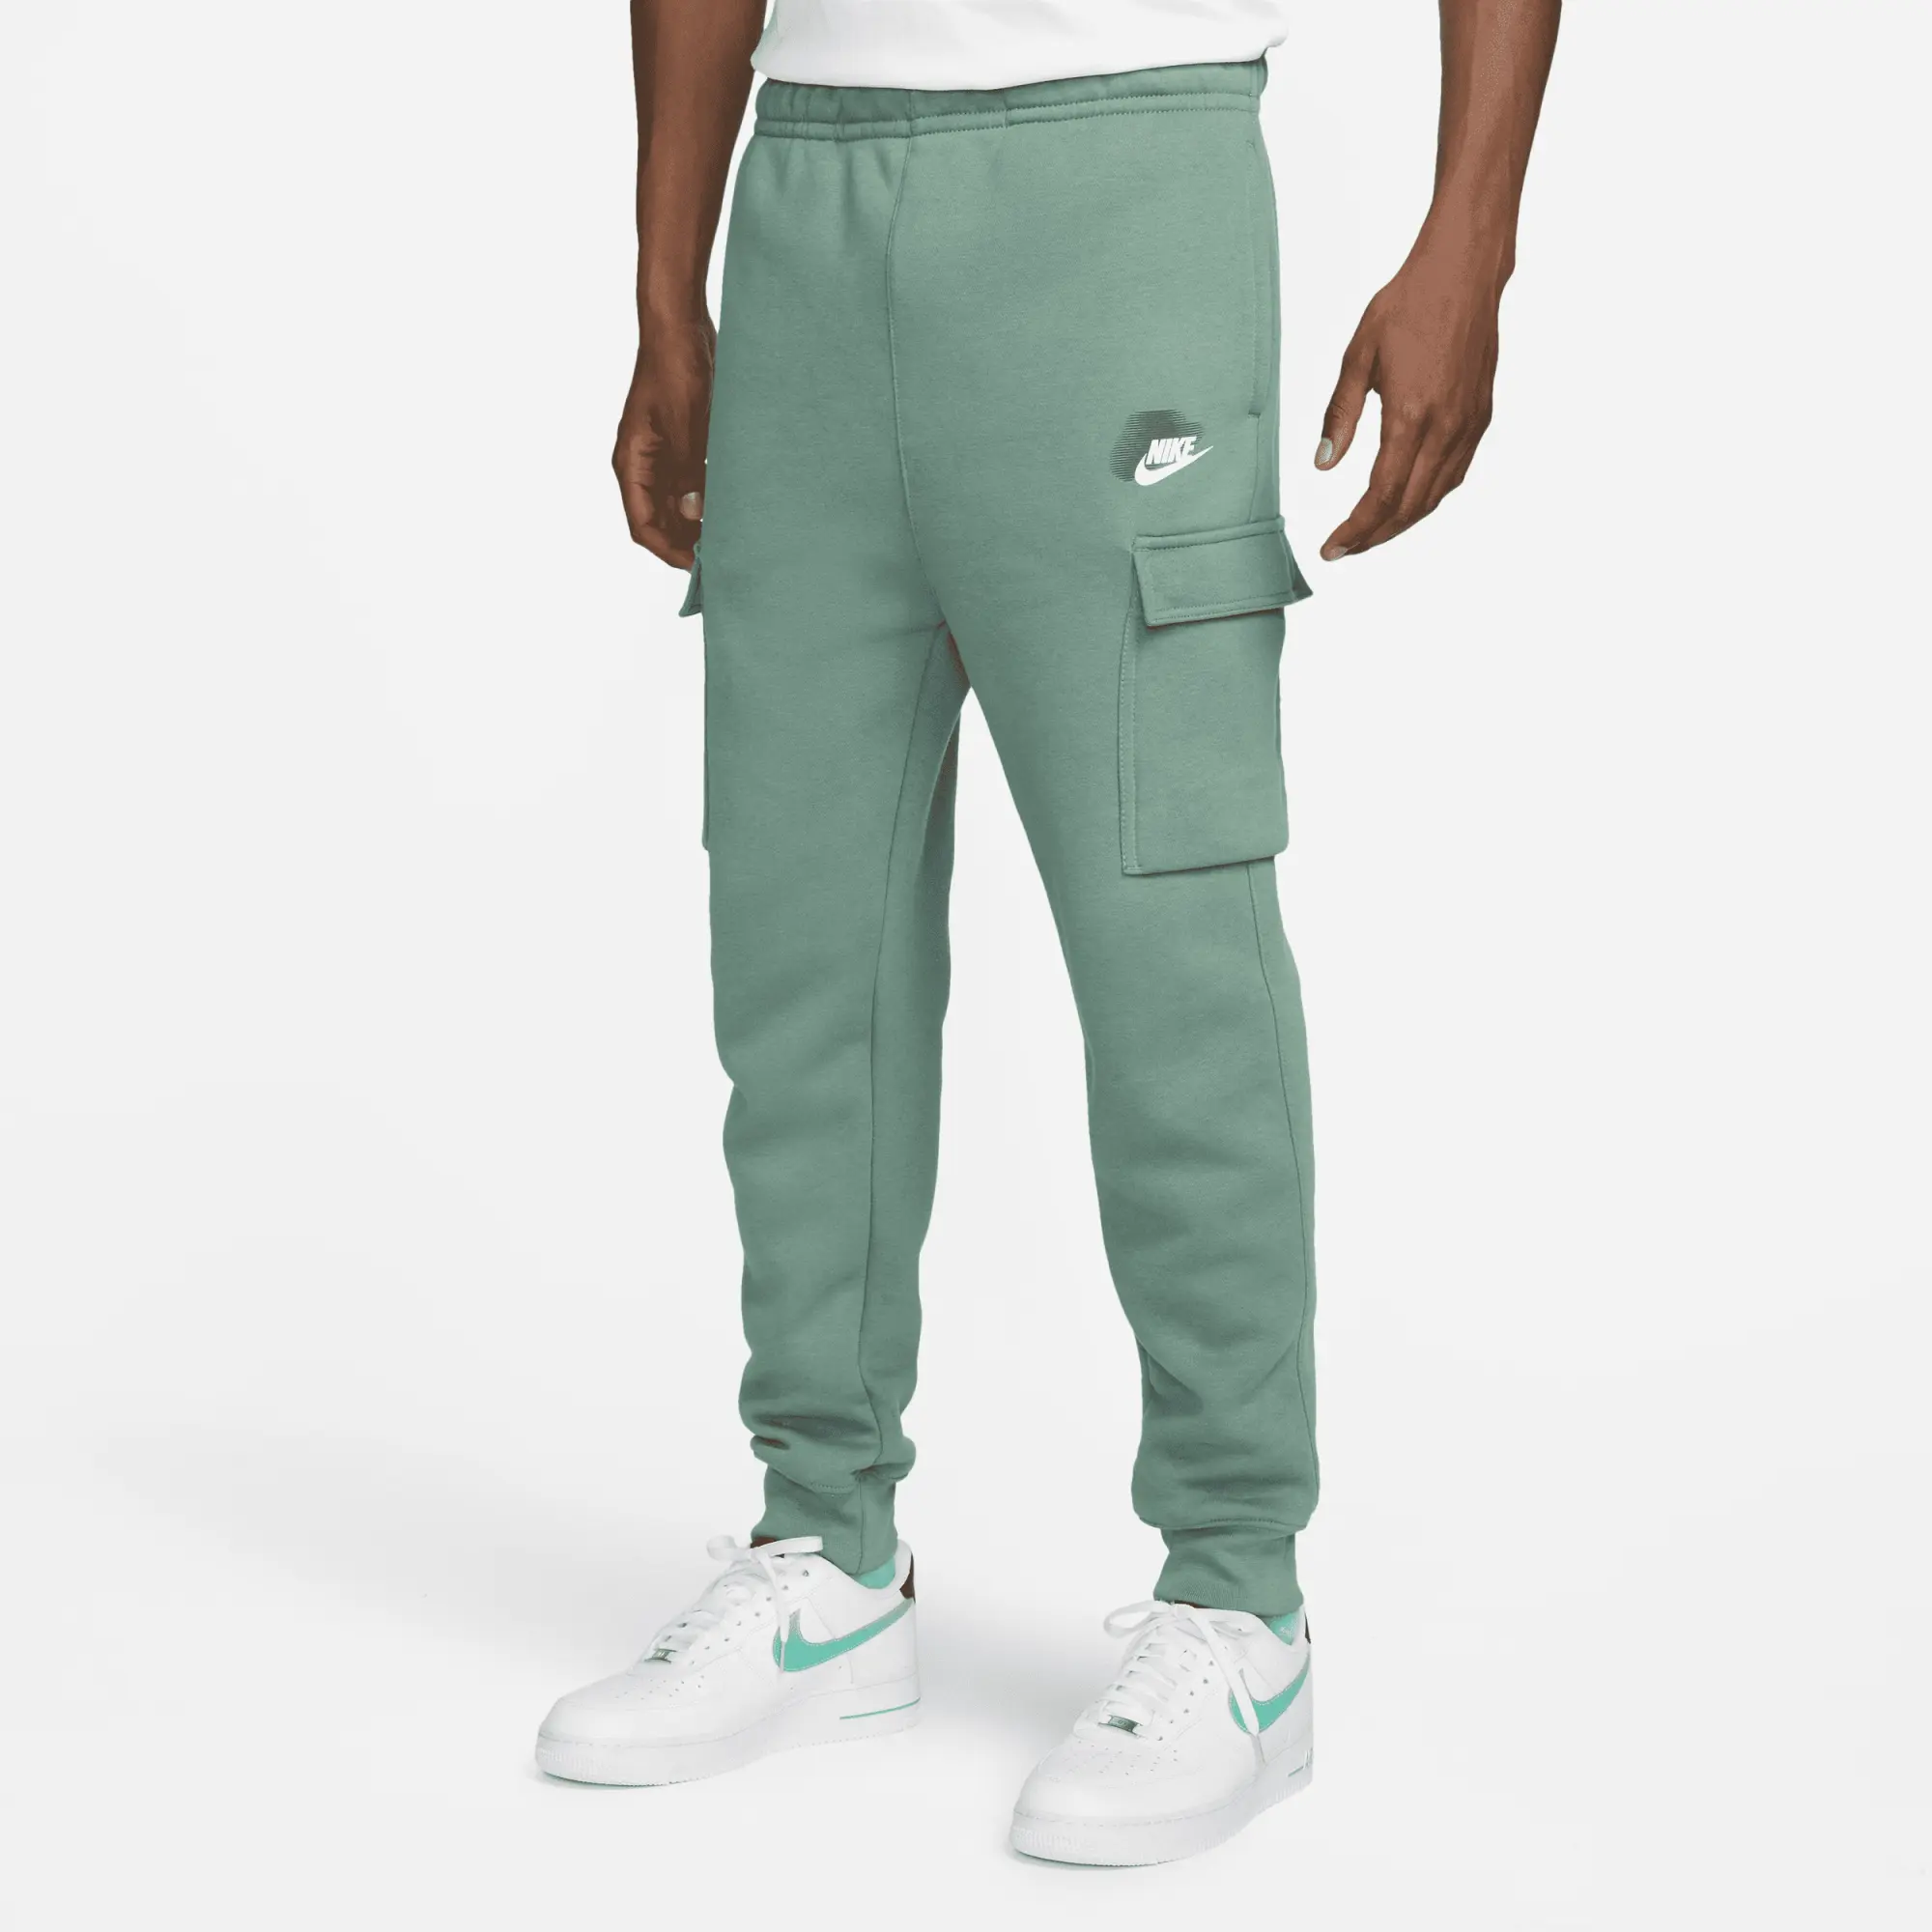 Nike Sportswear Standard Issue Men's Cargo Trousers - Green